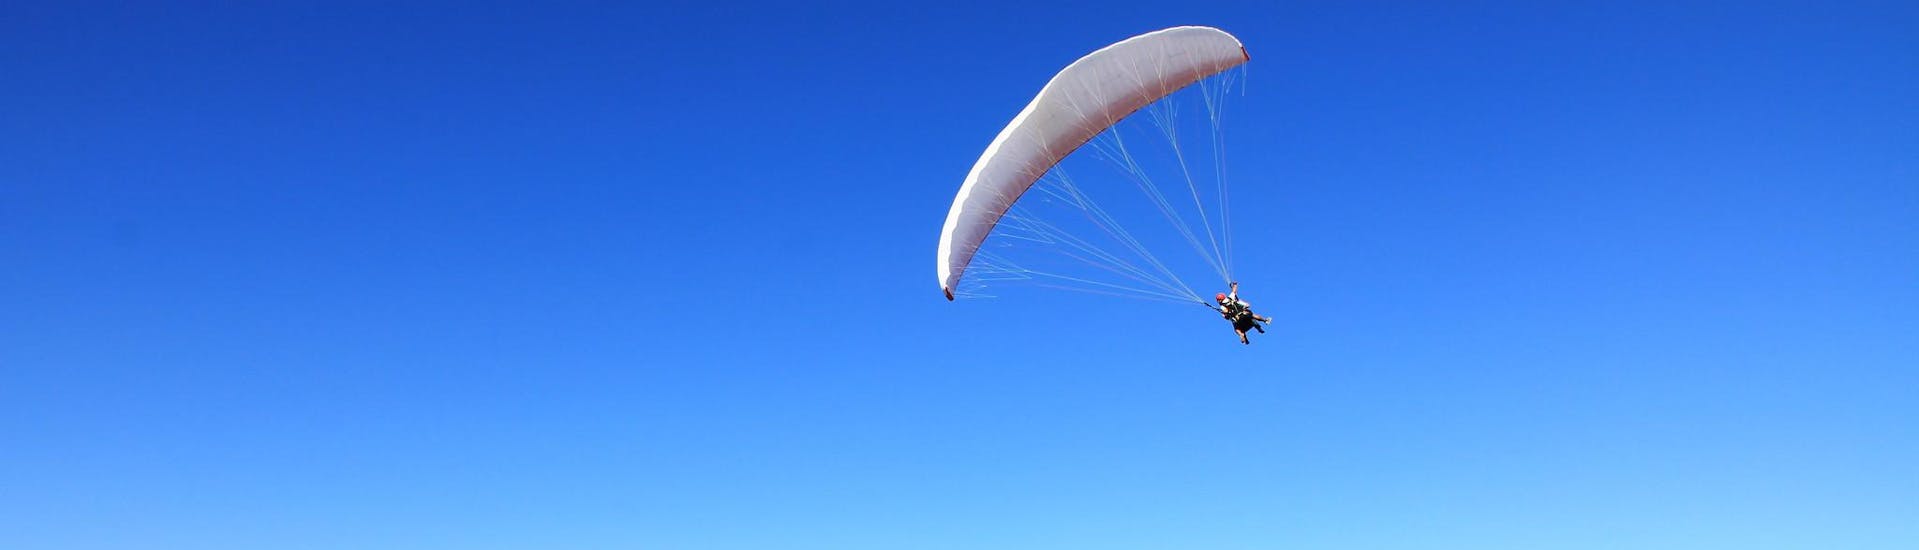 Twee mensen die een thermische paragliding vlucht maken.